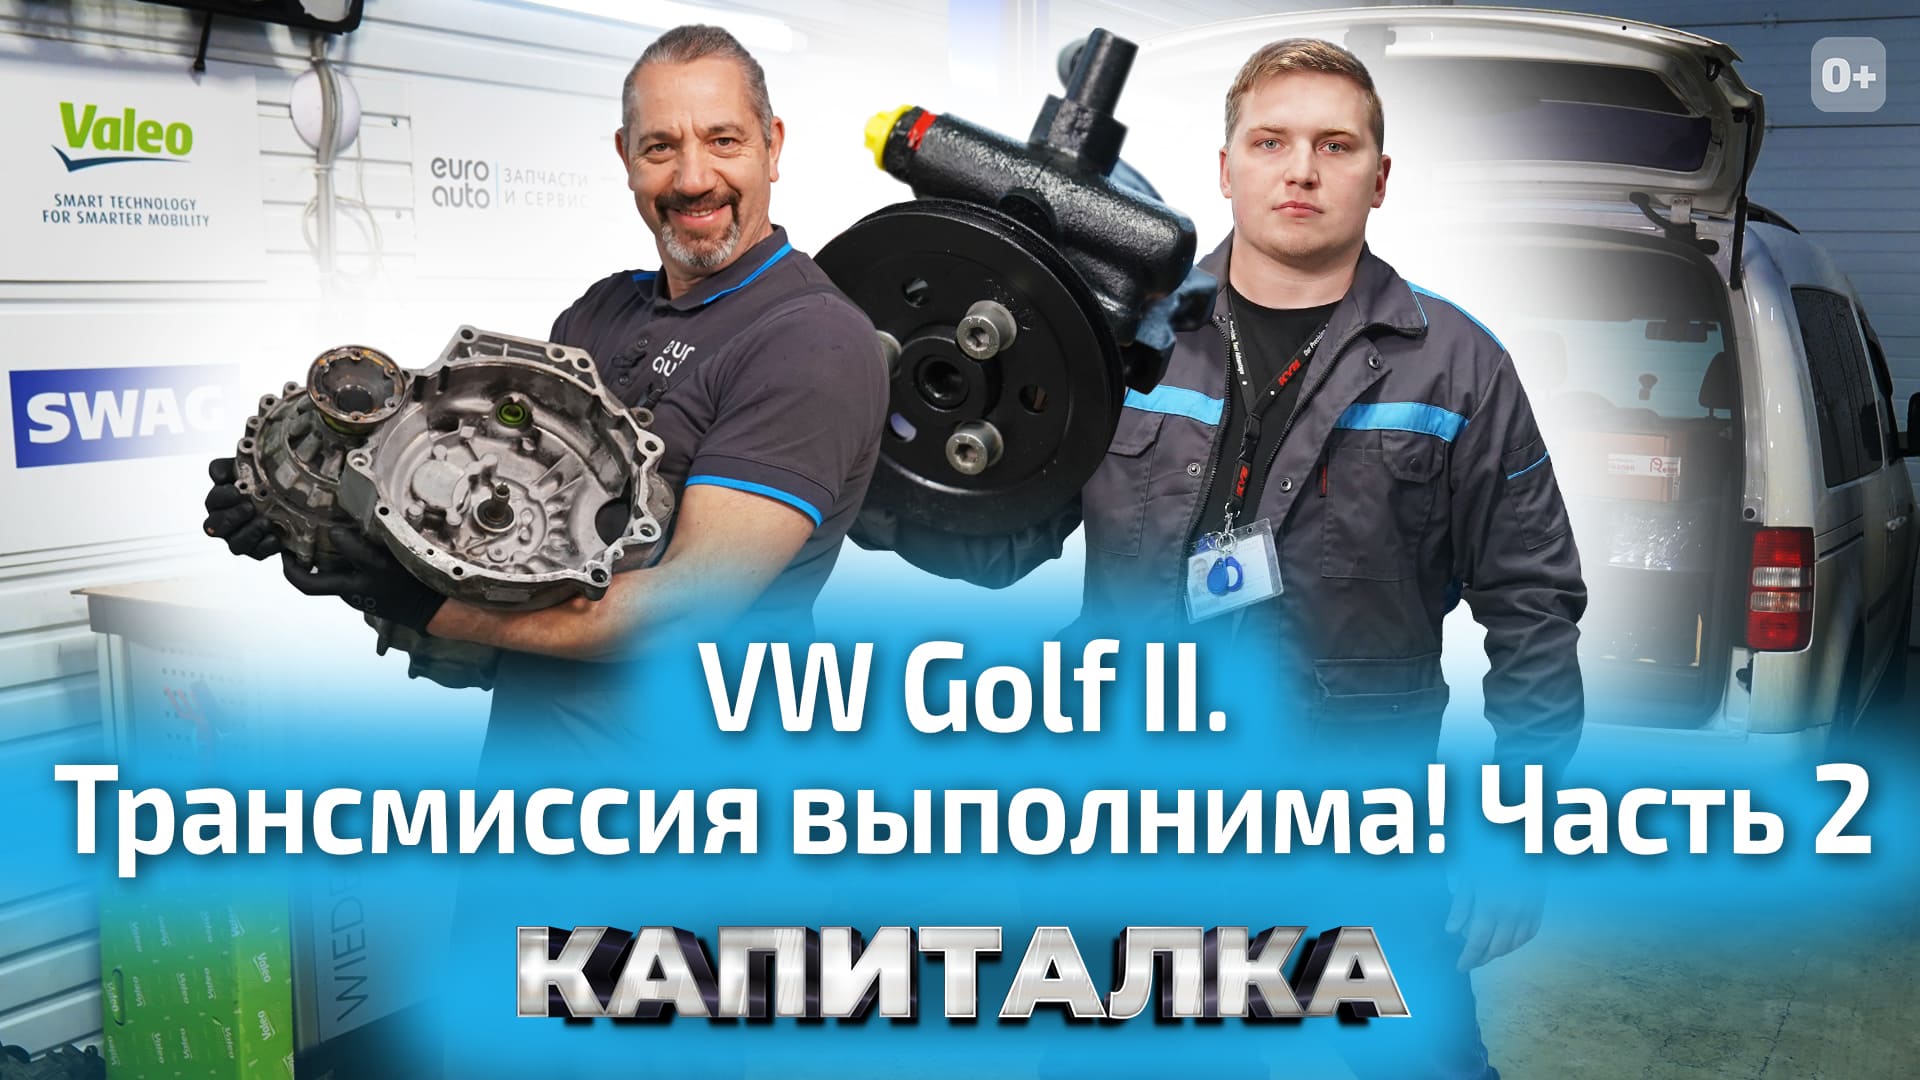 Ремонт трансмиссии: замена сальников и установка гидроусилителя руля на VW Golf 2 | Капиталка